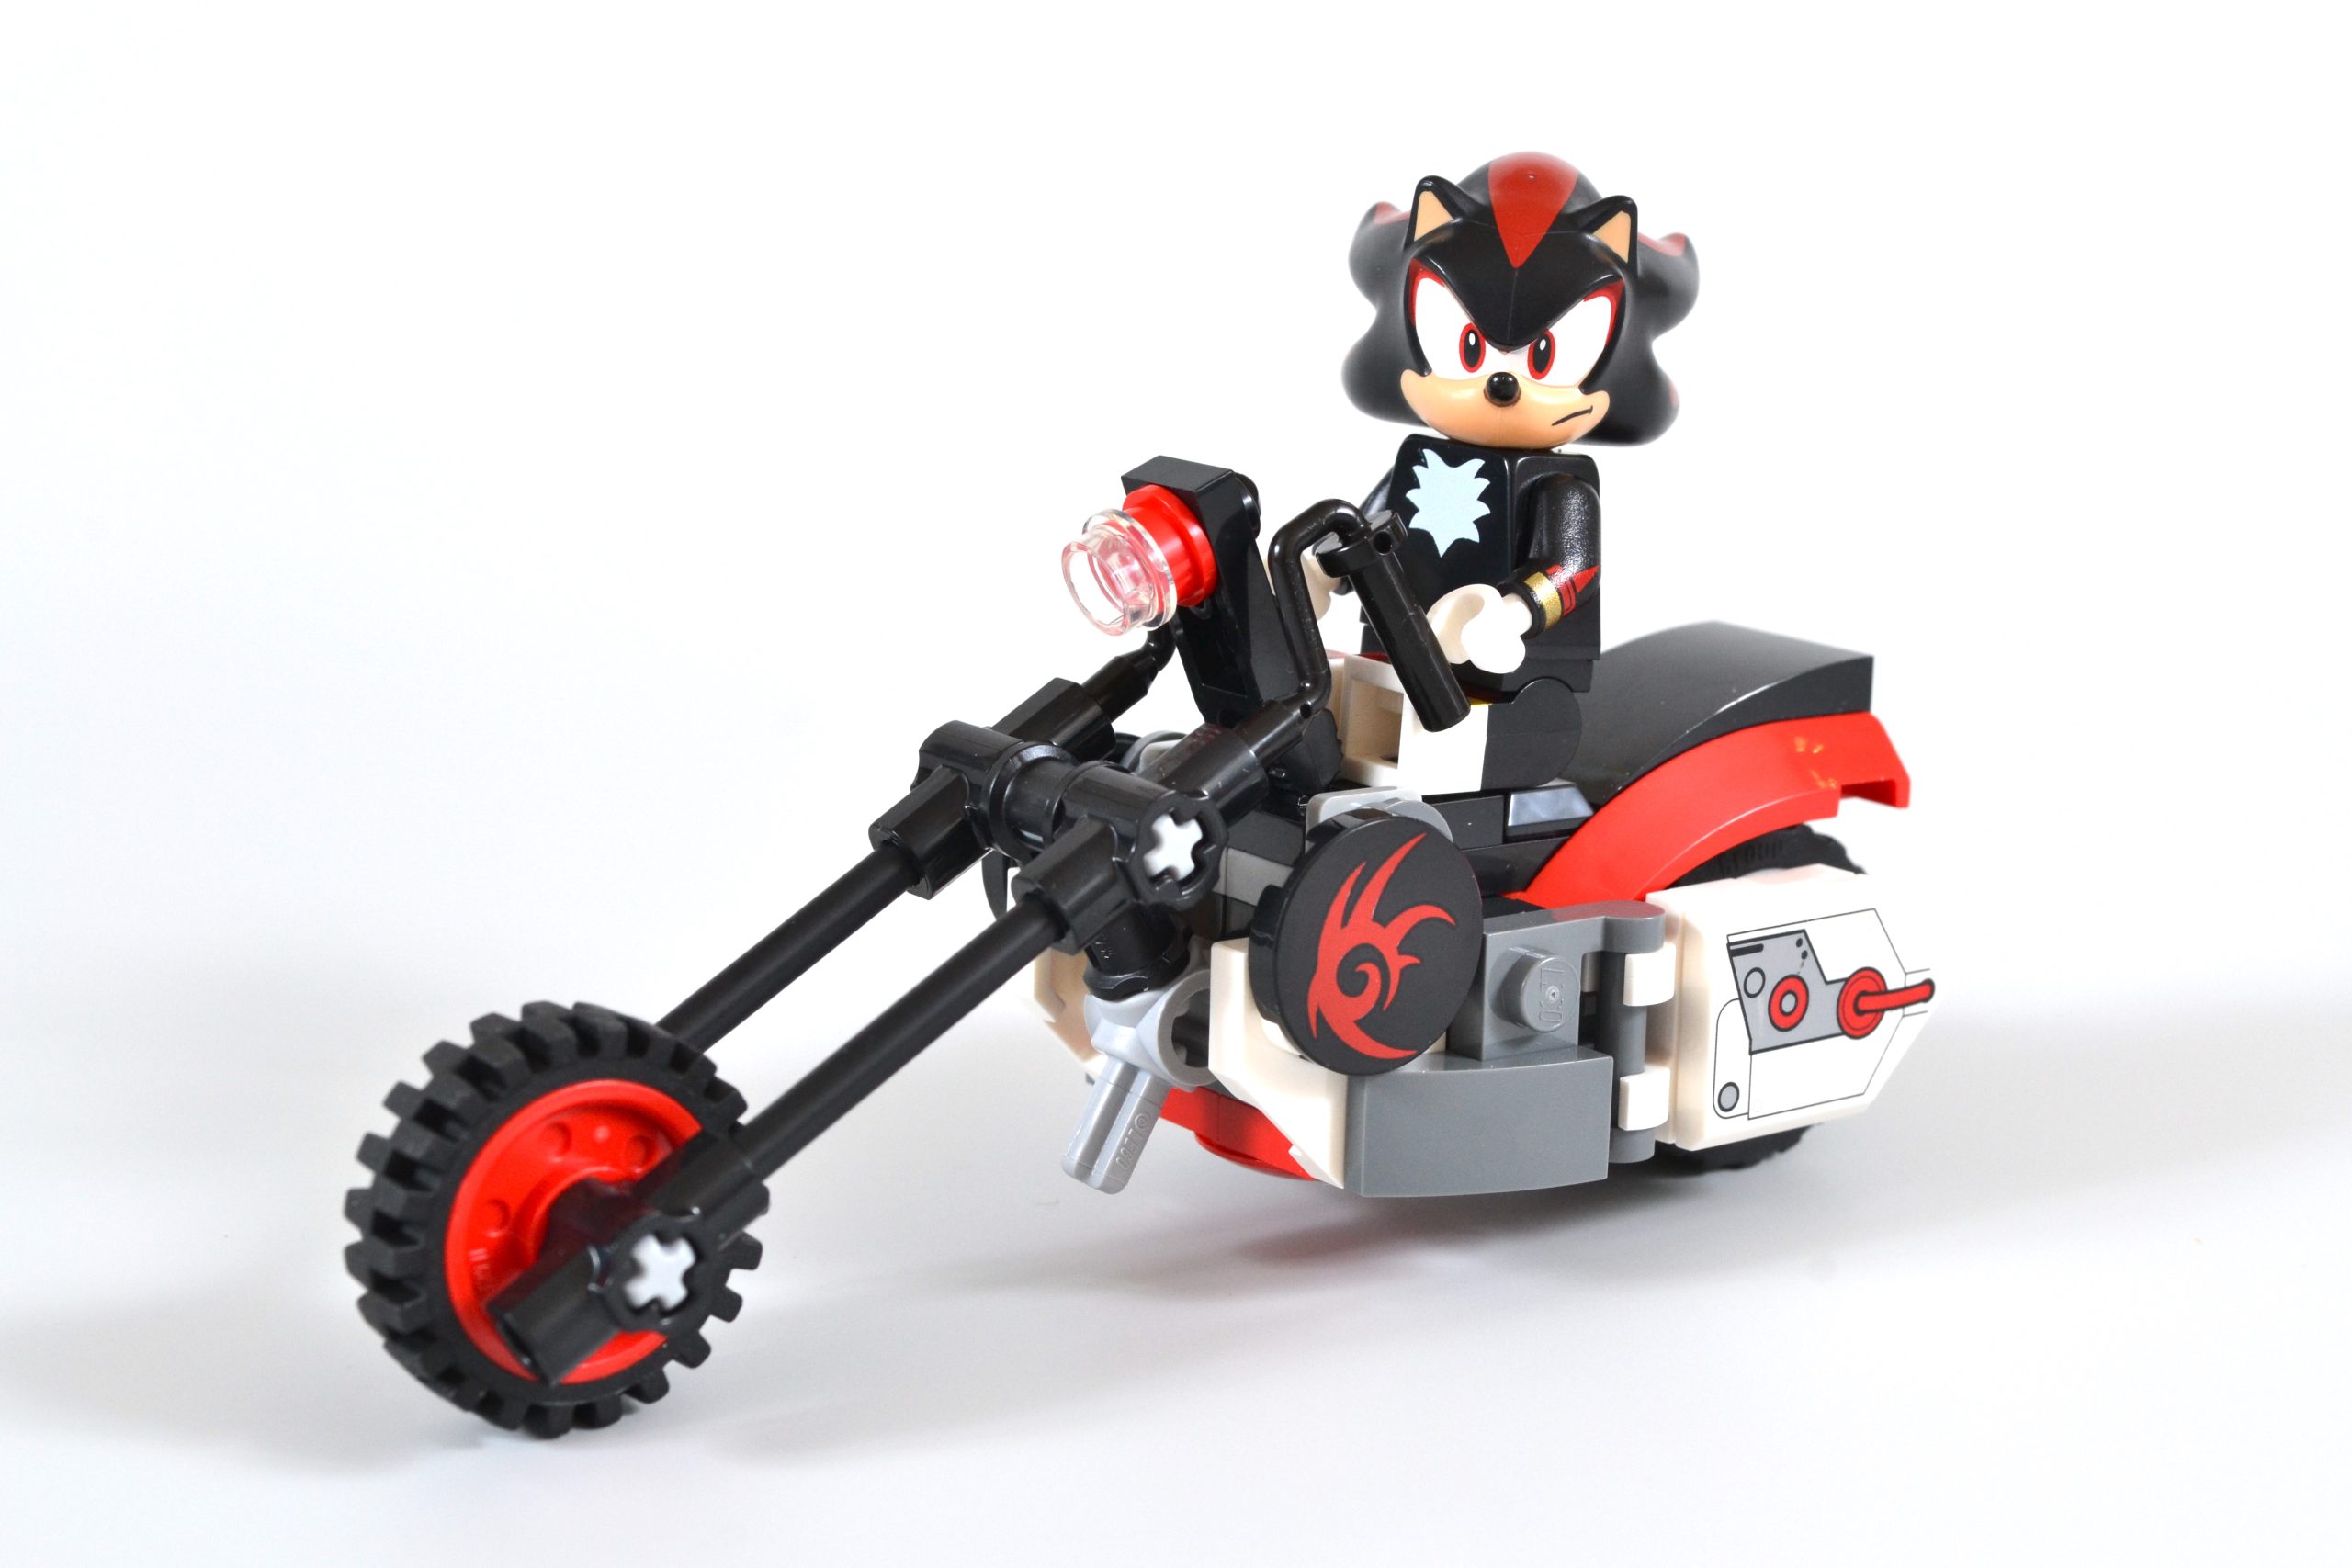 Shadow the Hedgehog estreia no primeiro conjunto LEGO Sonic the